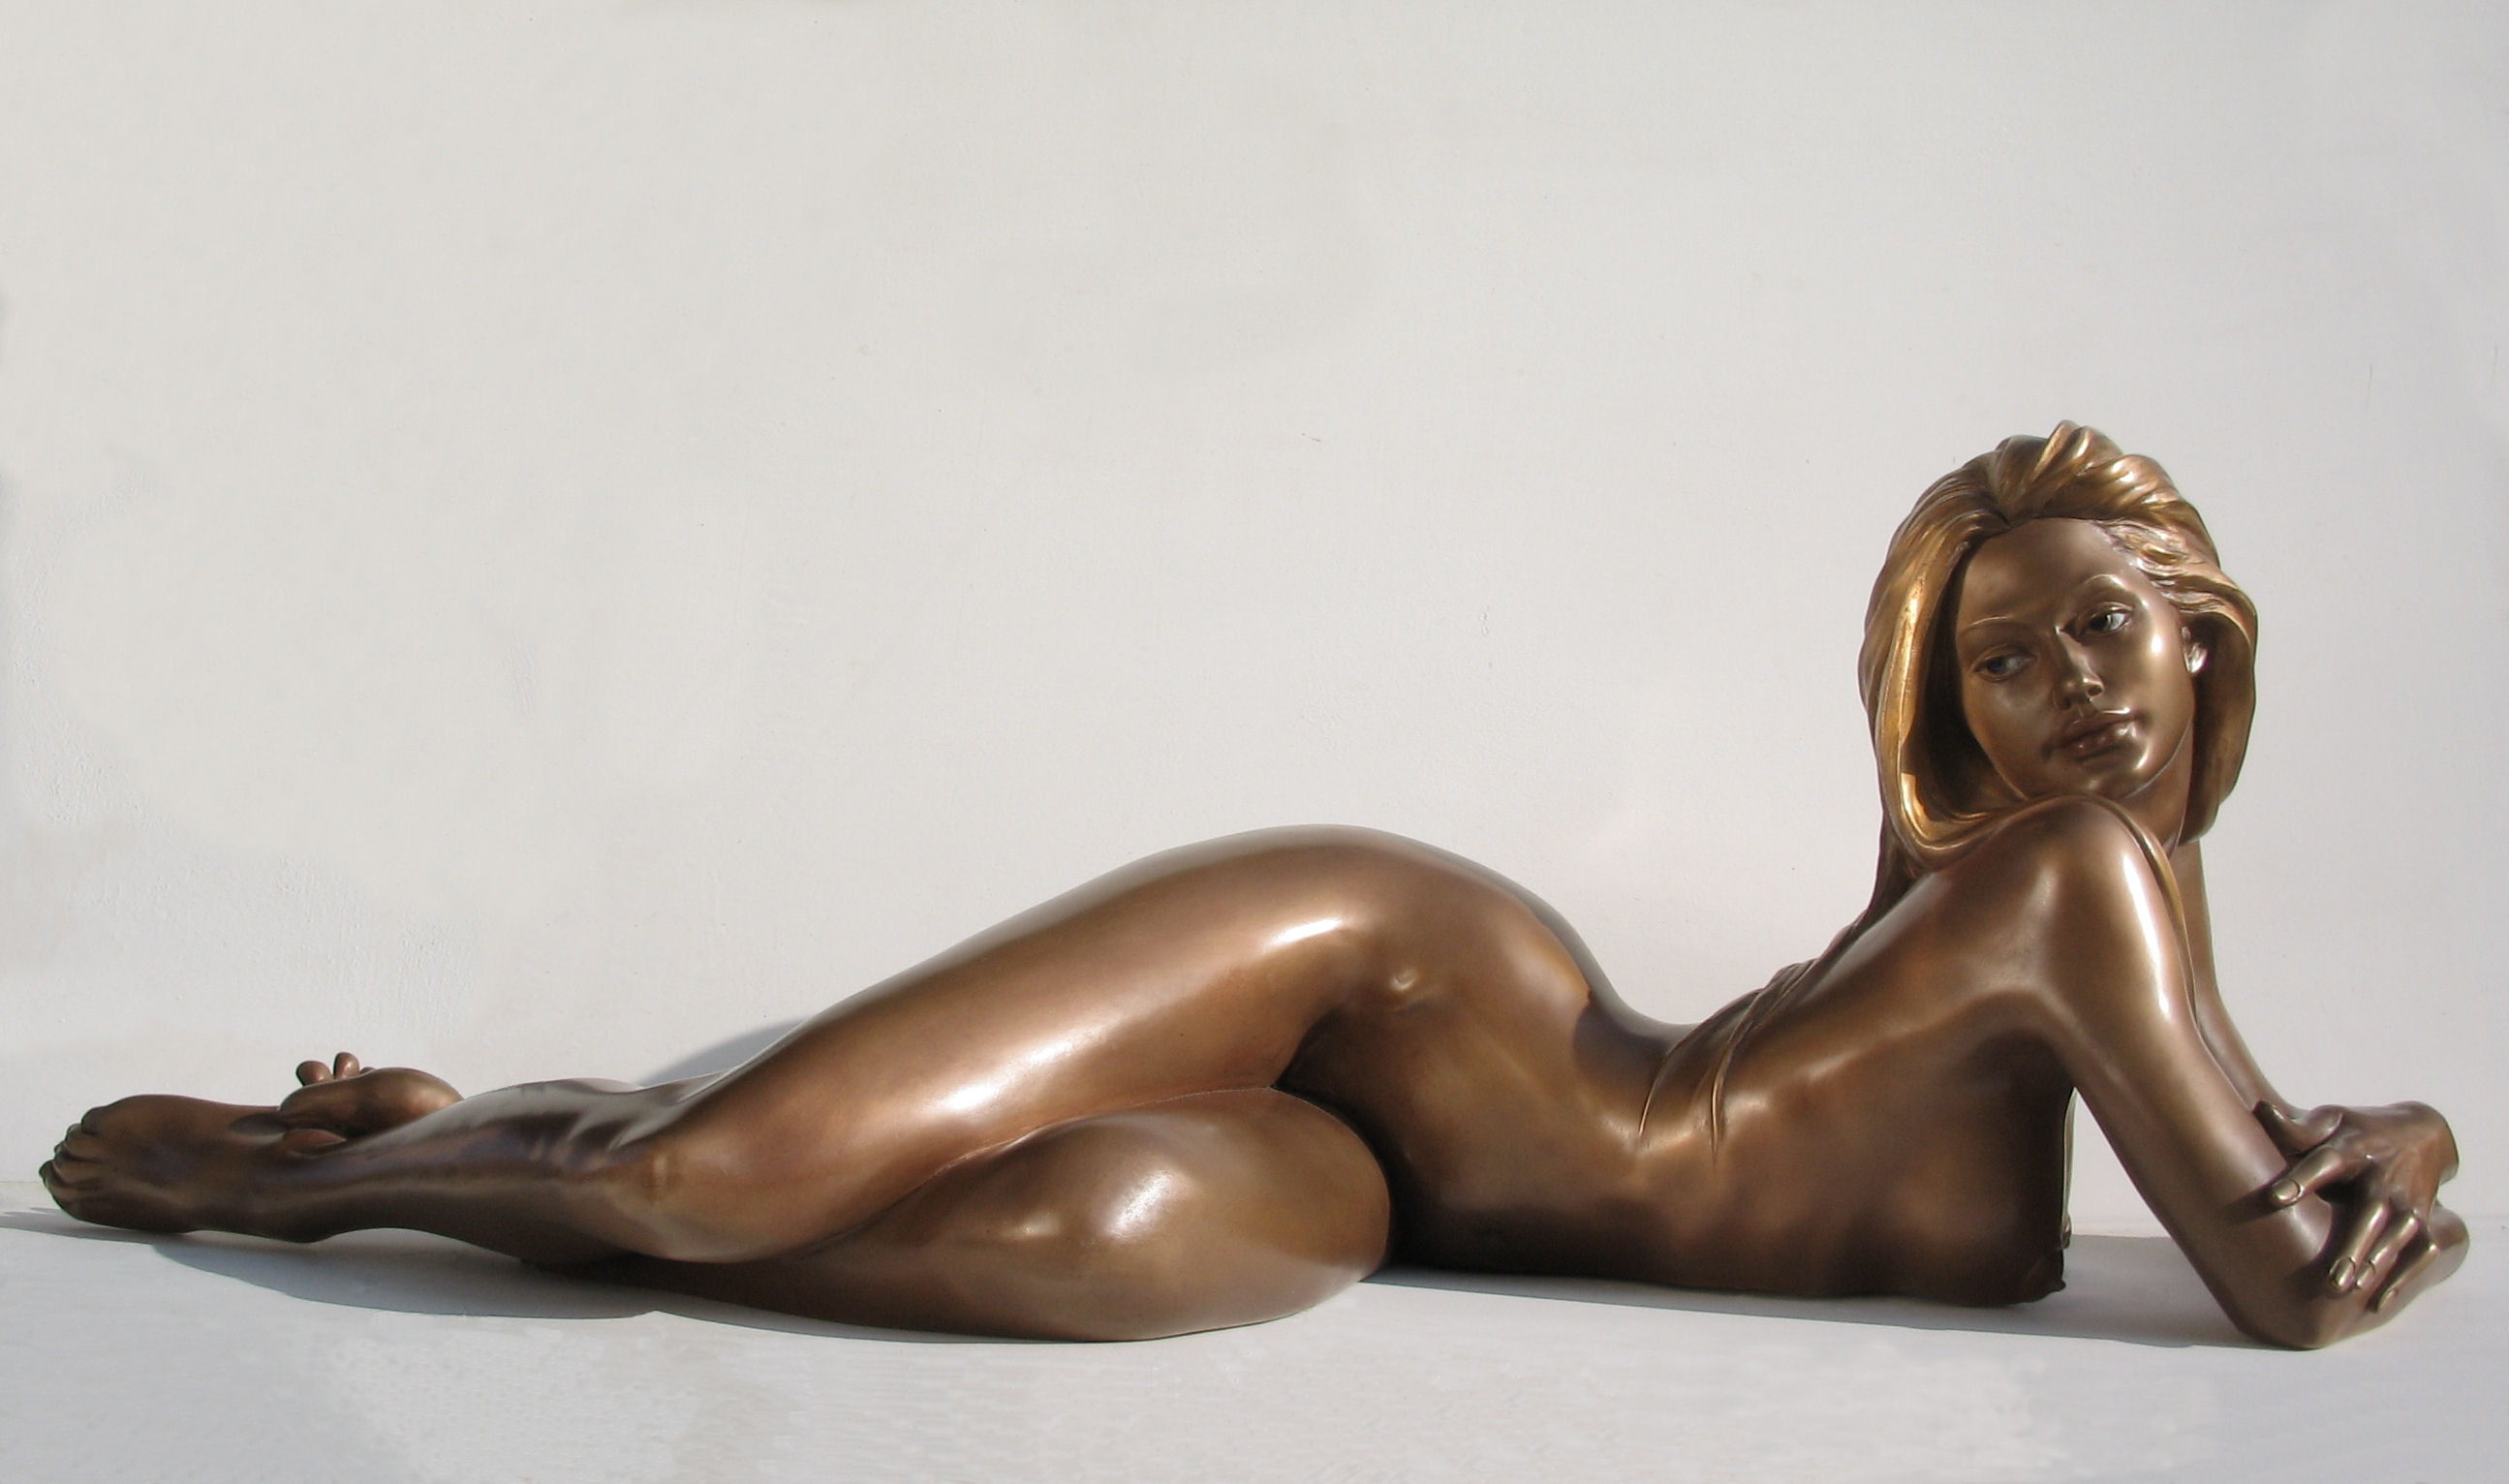 Bronze-statues-of-women-sculptures-artistic-nudes-vittorio-tessaro-Eva-2